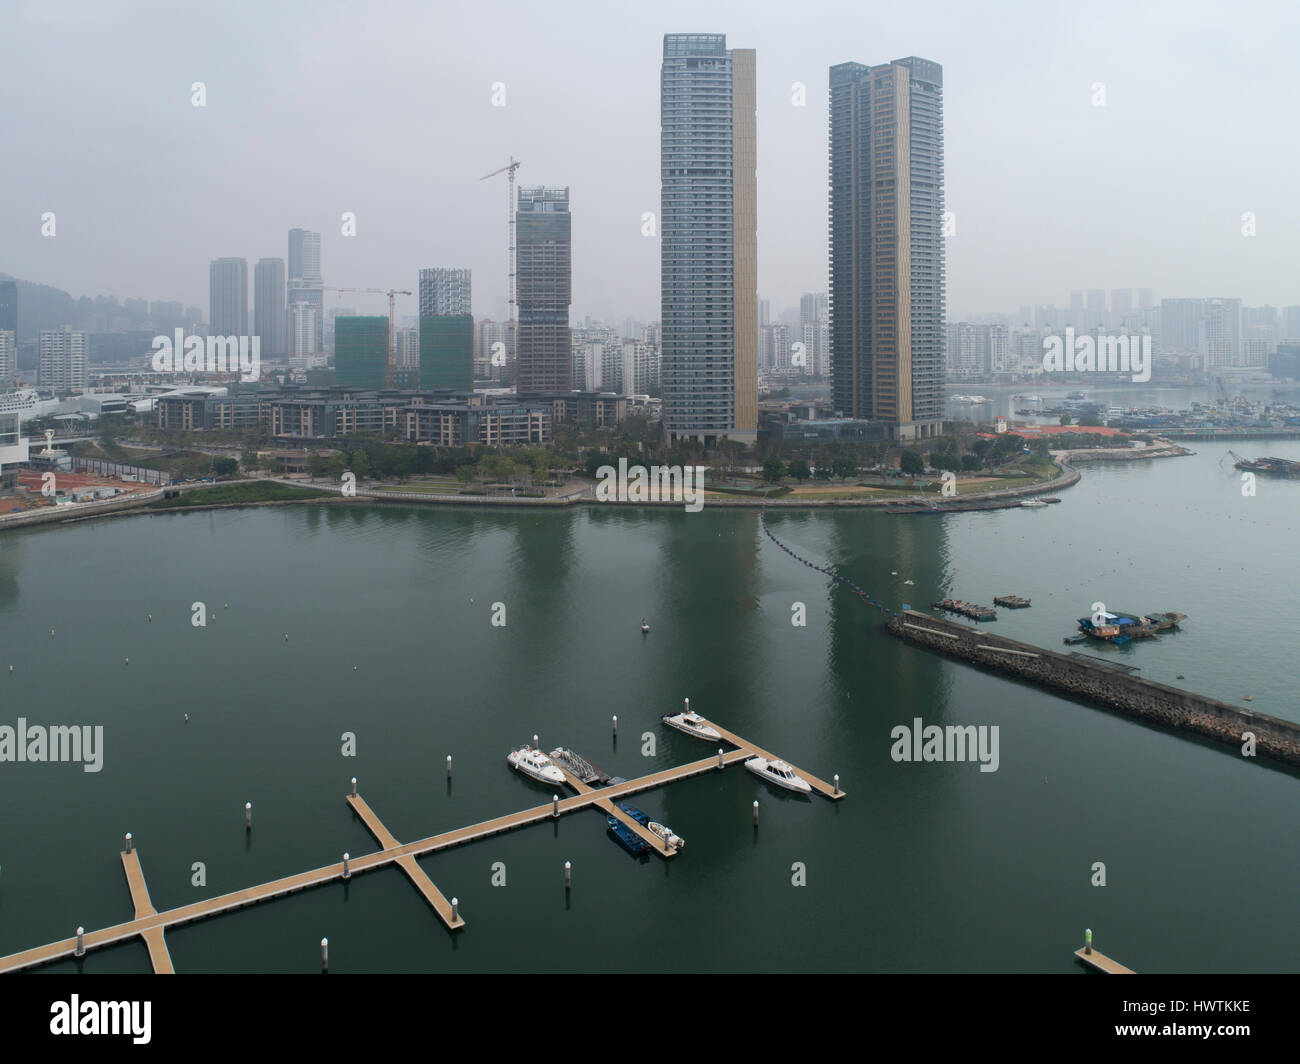 General view of Shekou seen from harbor, including Peninsula apartment complex. Nanshan, Shenzhen, Guangdong, China Stock Photo